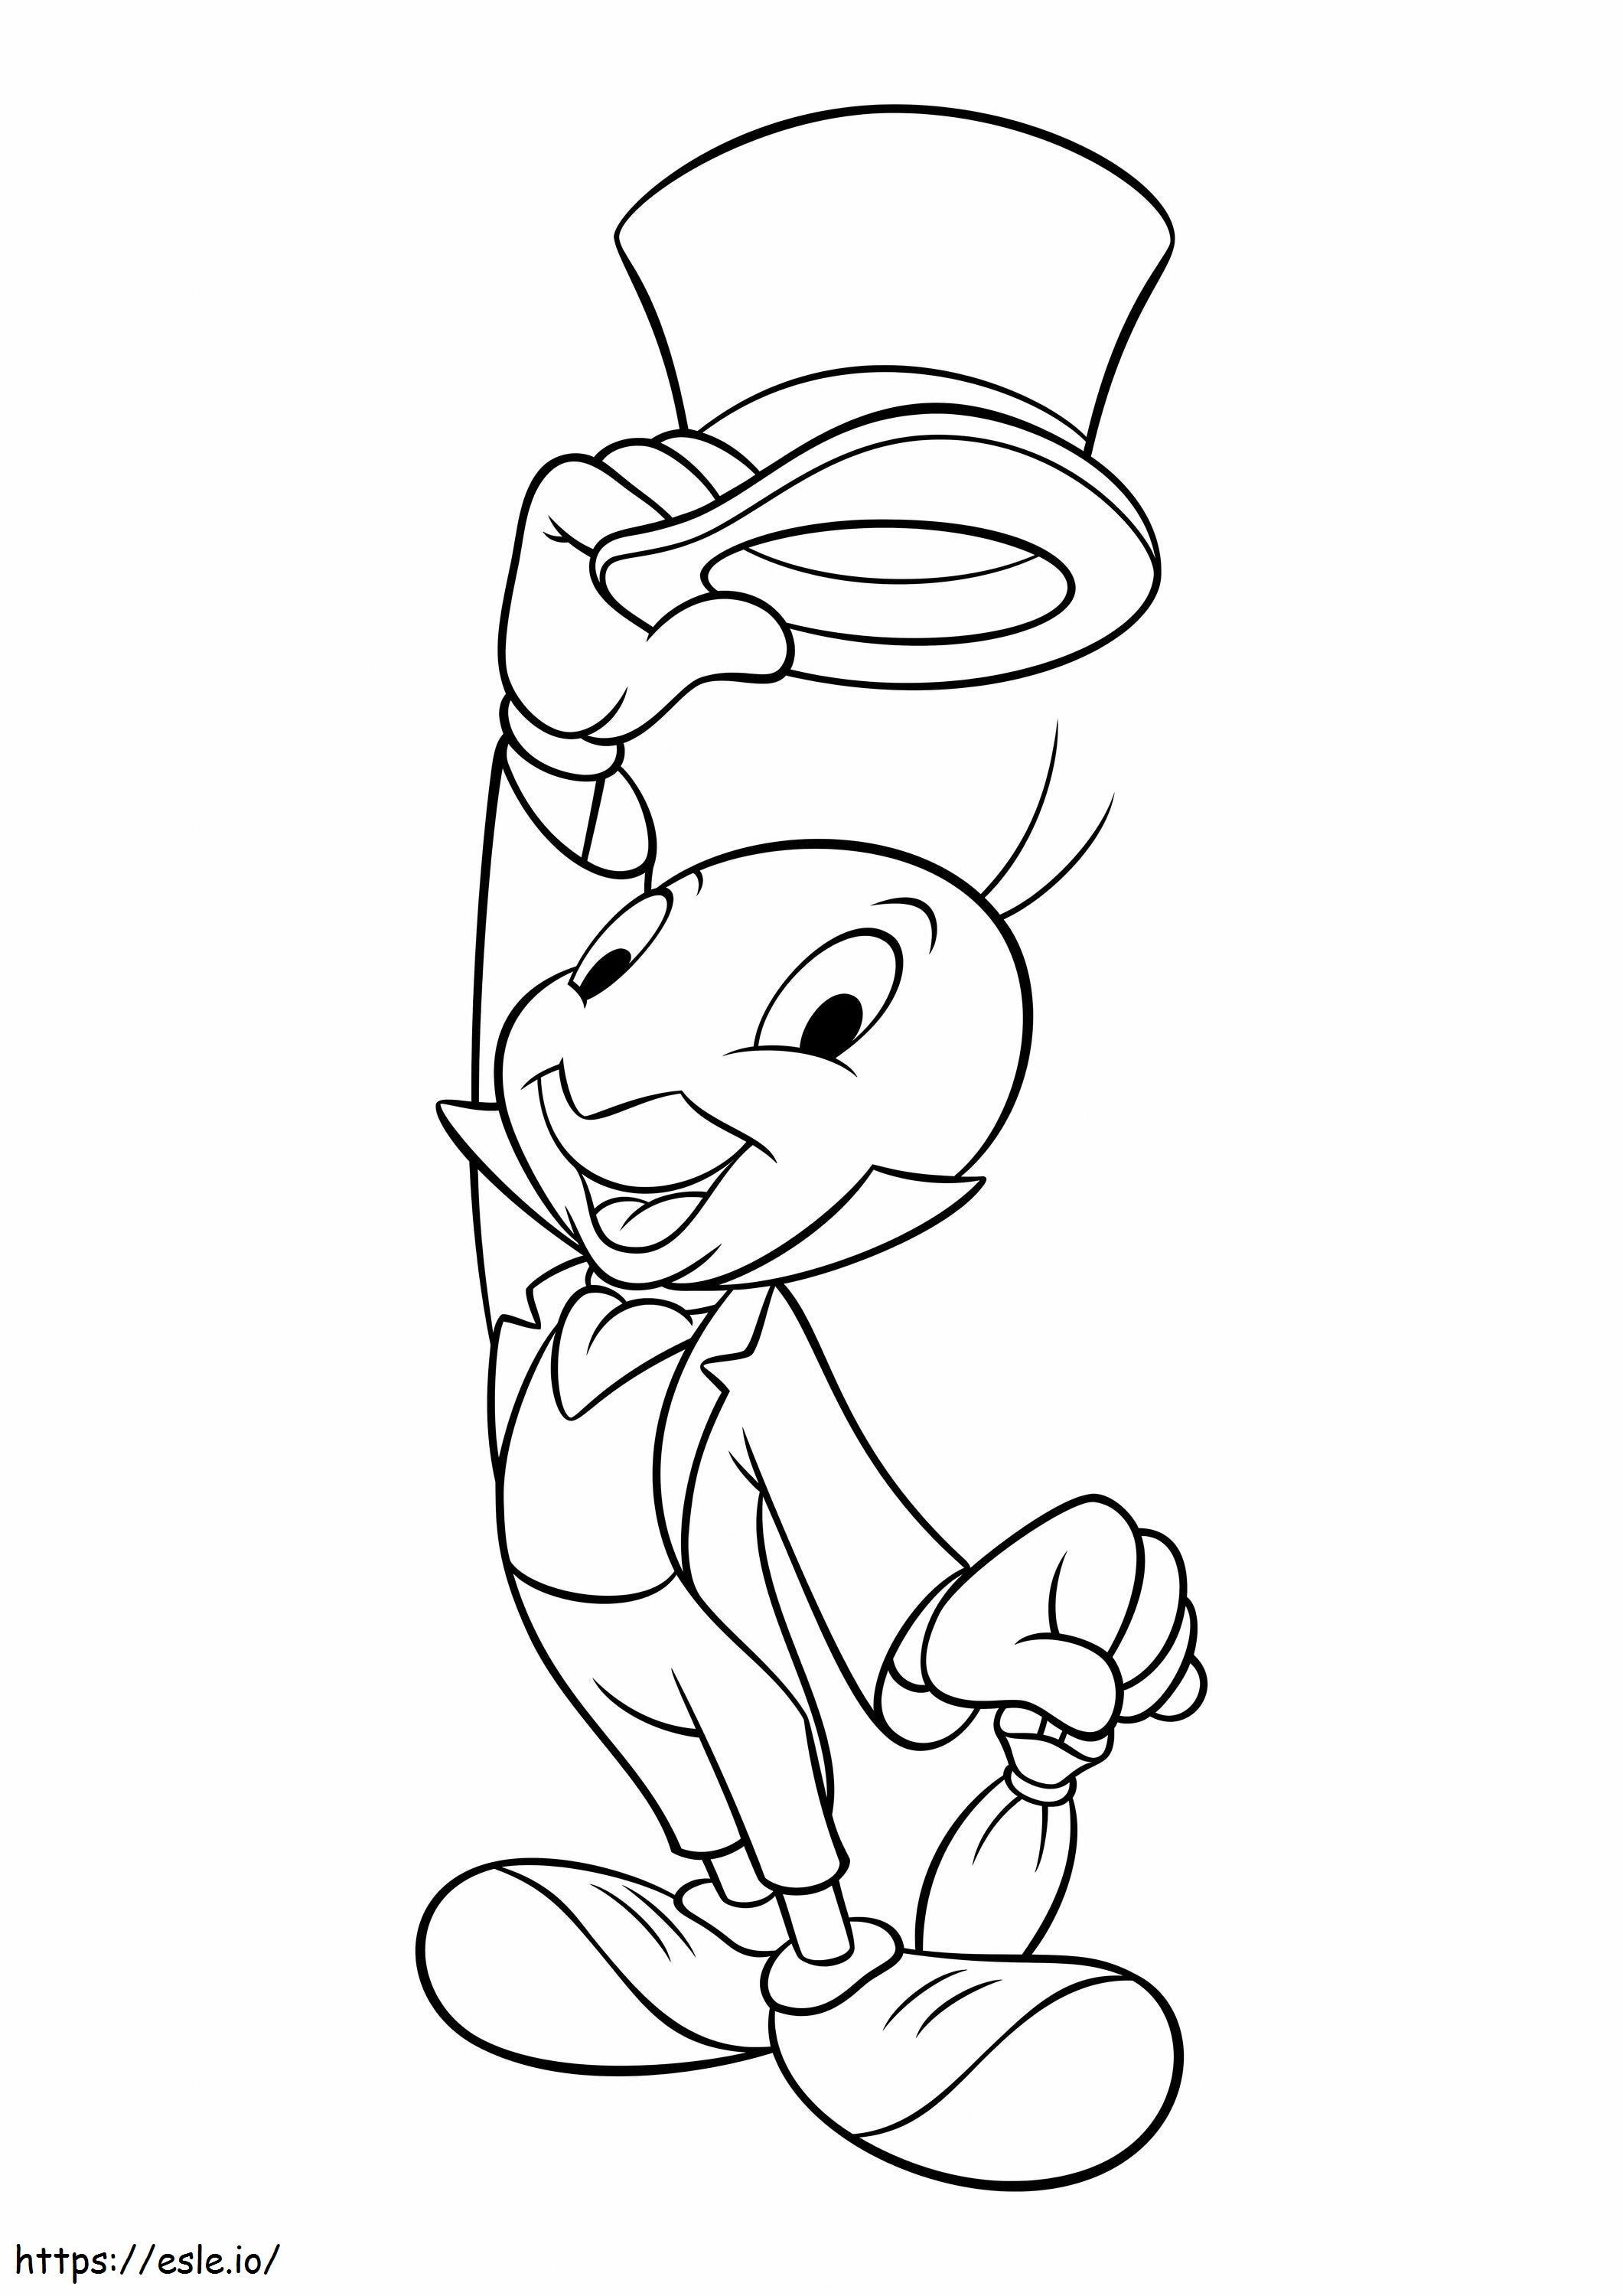 Jiminy Cricket felemelte a kalapot kifestő